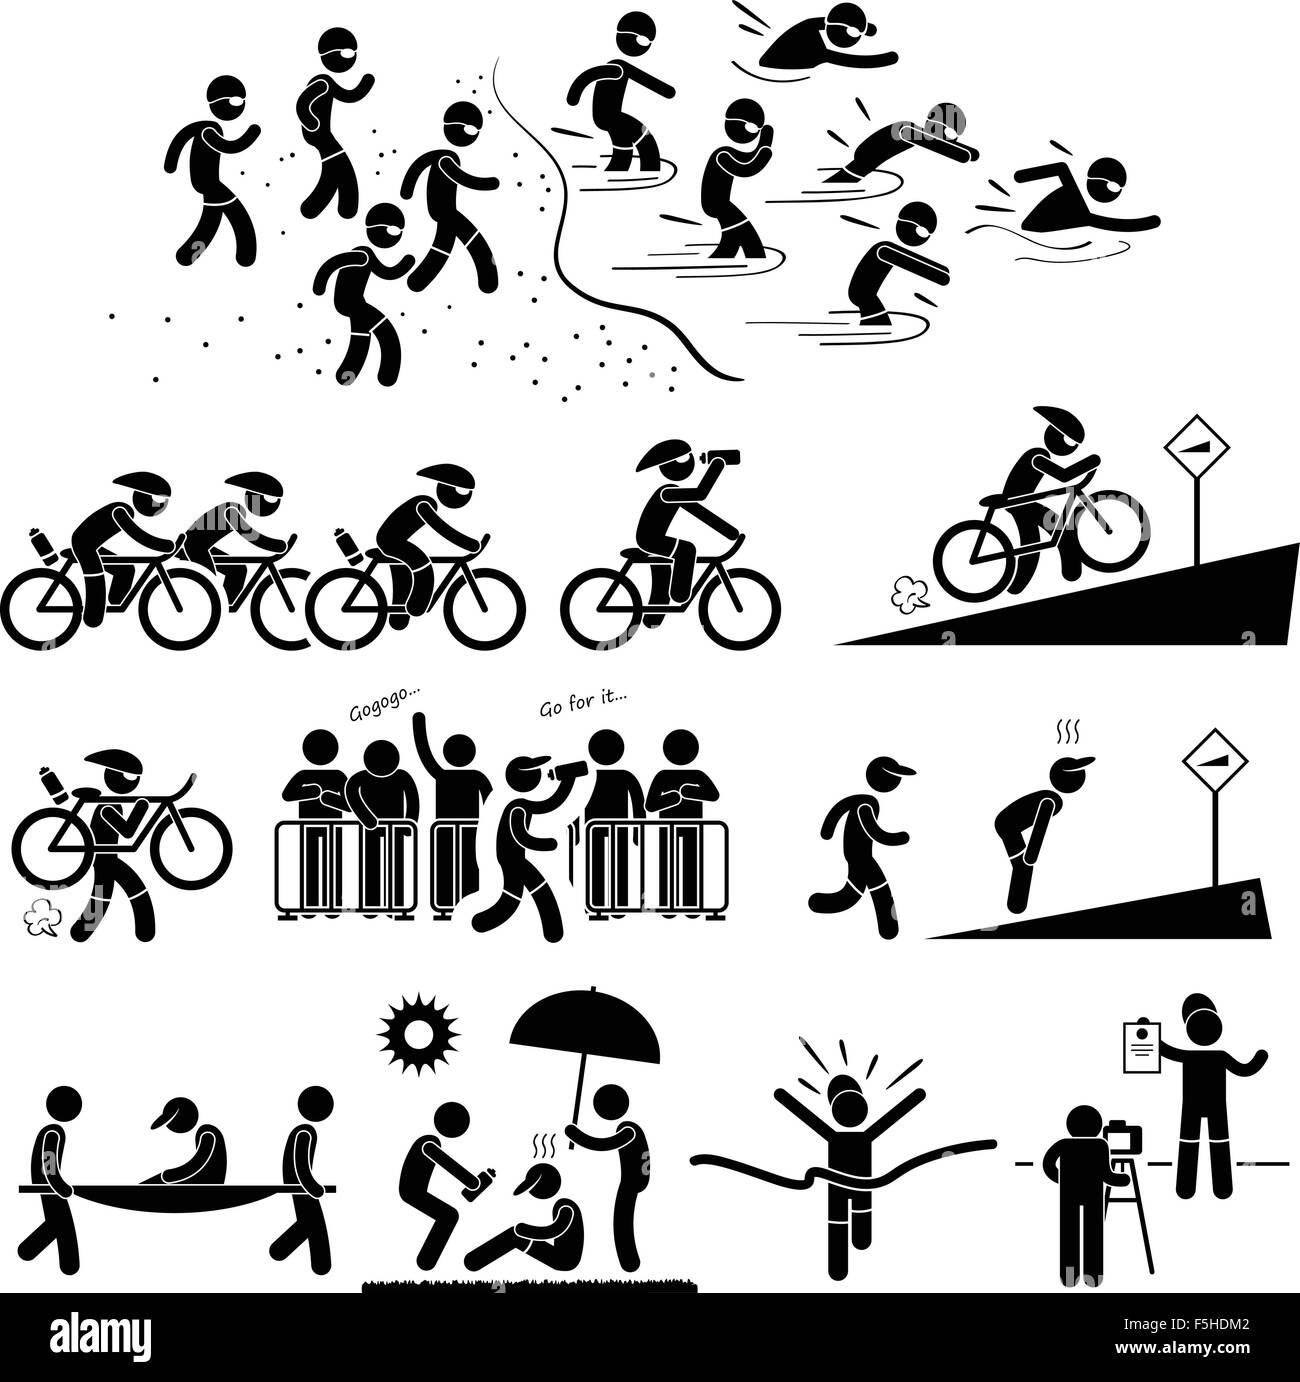 Natation Cyclisme Triathlon Marathon Running Sports Stick Figure Symbole Icône pictogramme Illustration de Vecteur